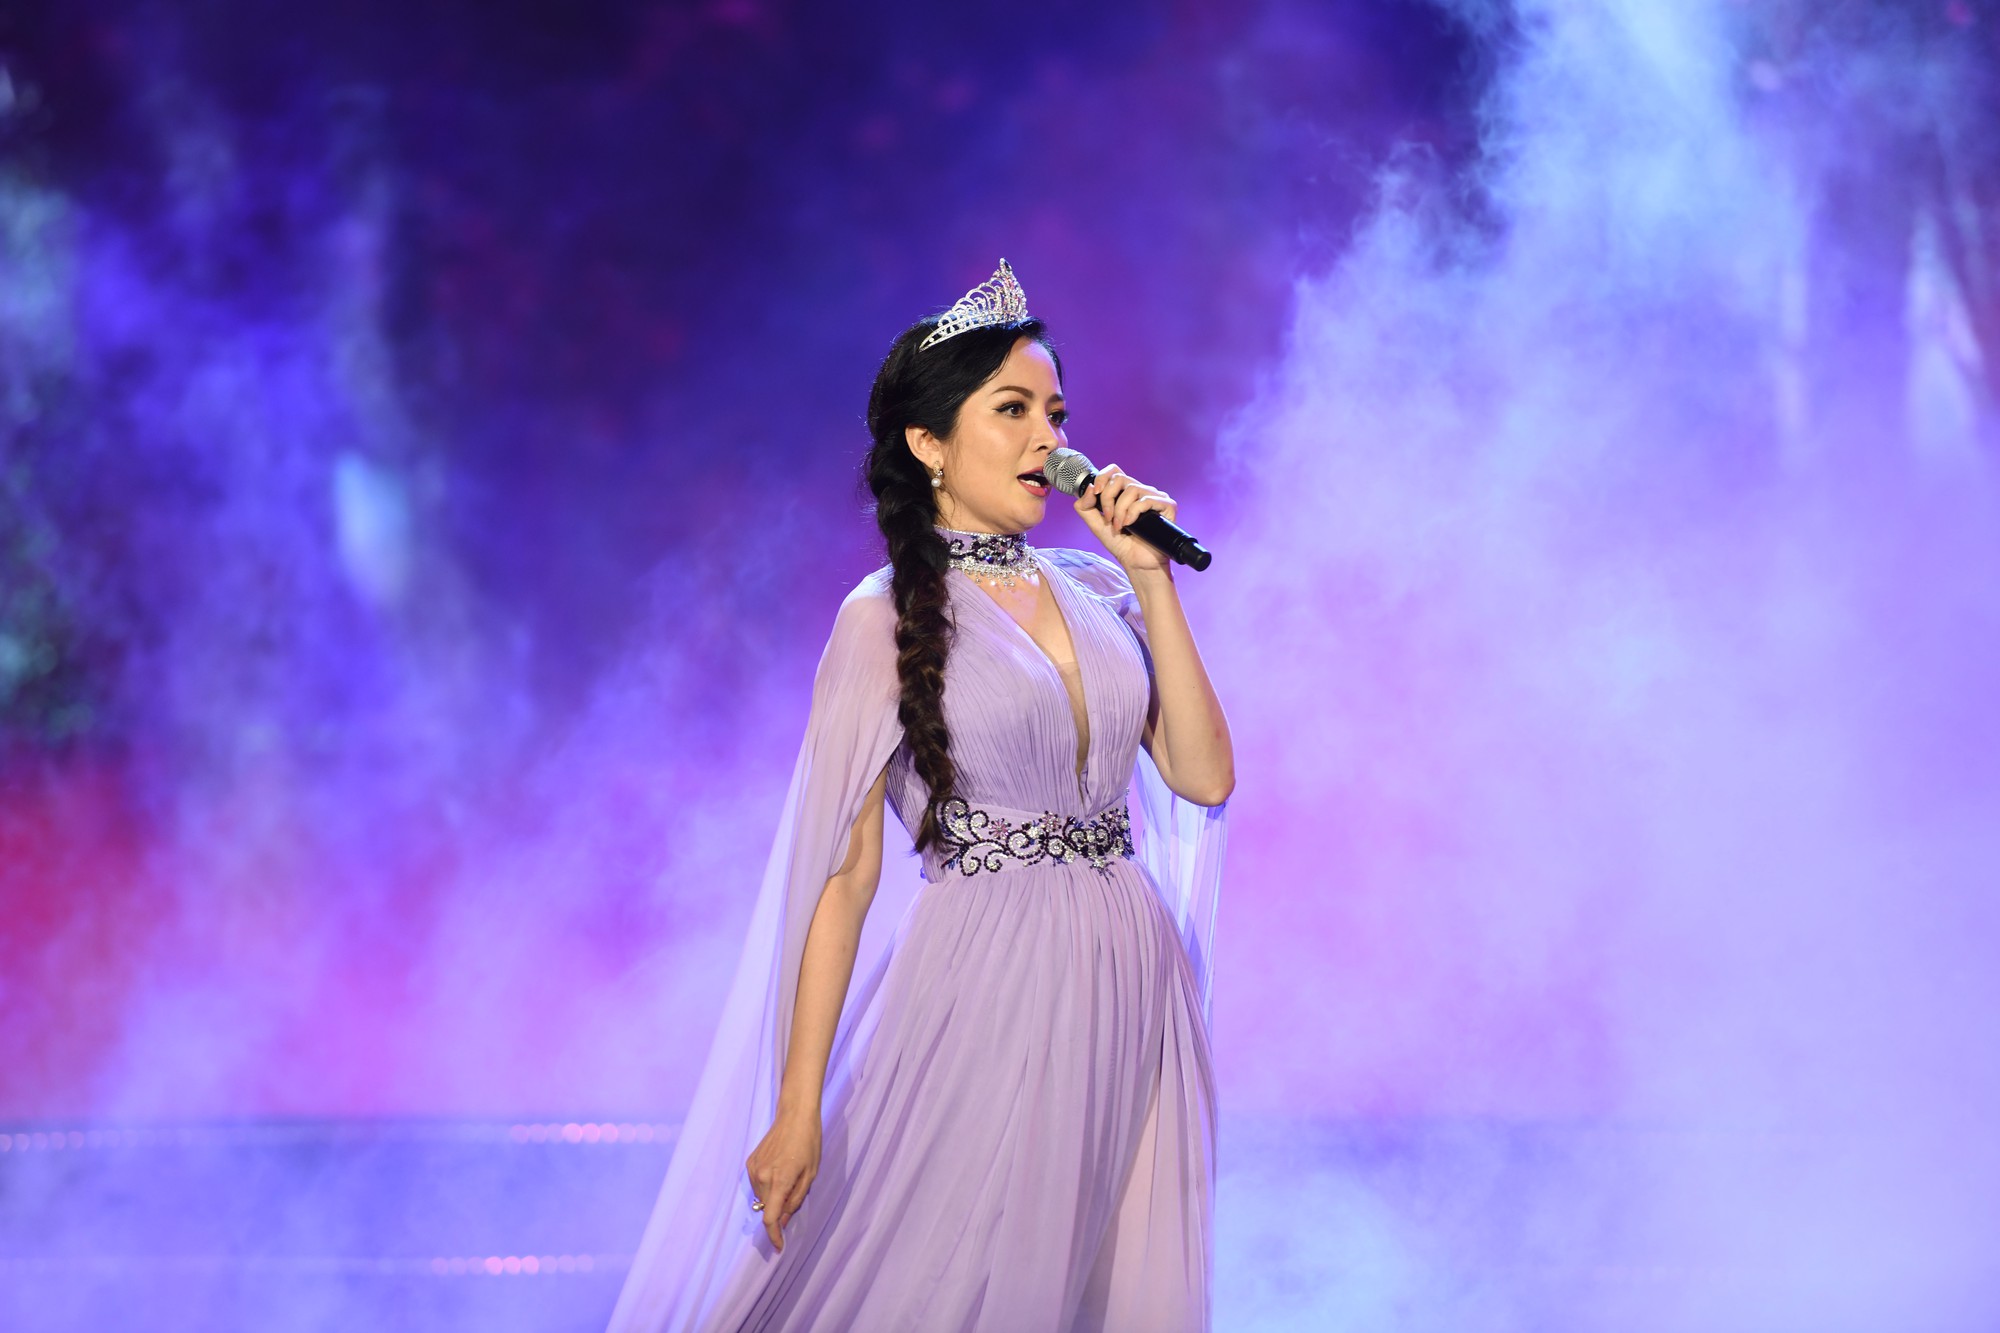 Dàn Hoa hậu đồng loạt hát trong Gala 30 năm HHVN: Đỗ Mỹ Linh nổi bật nhất khi mở màn cực hoành tráng và lộng lẫy như nữ thần - Ảnh 6.